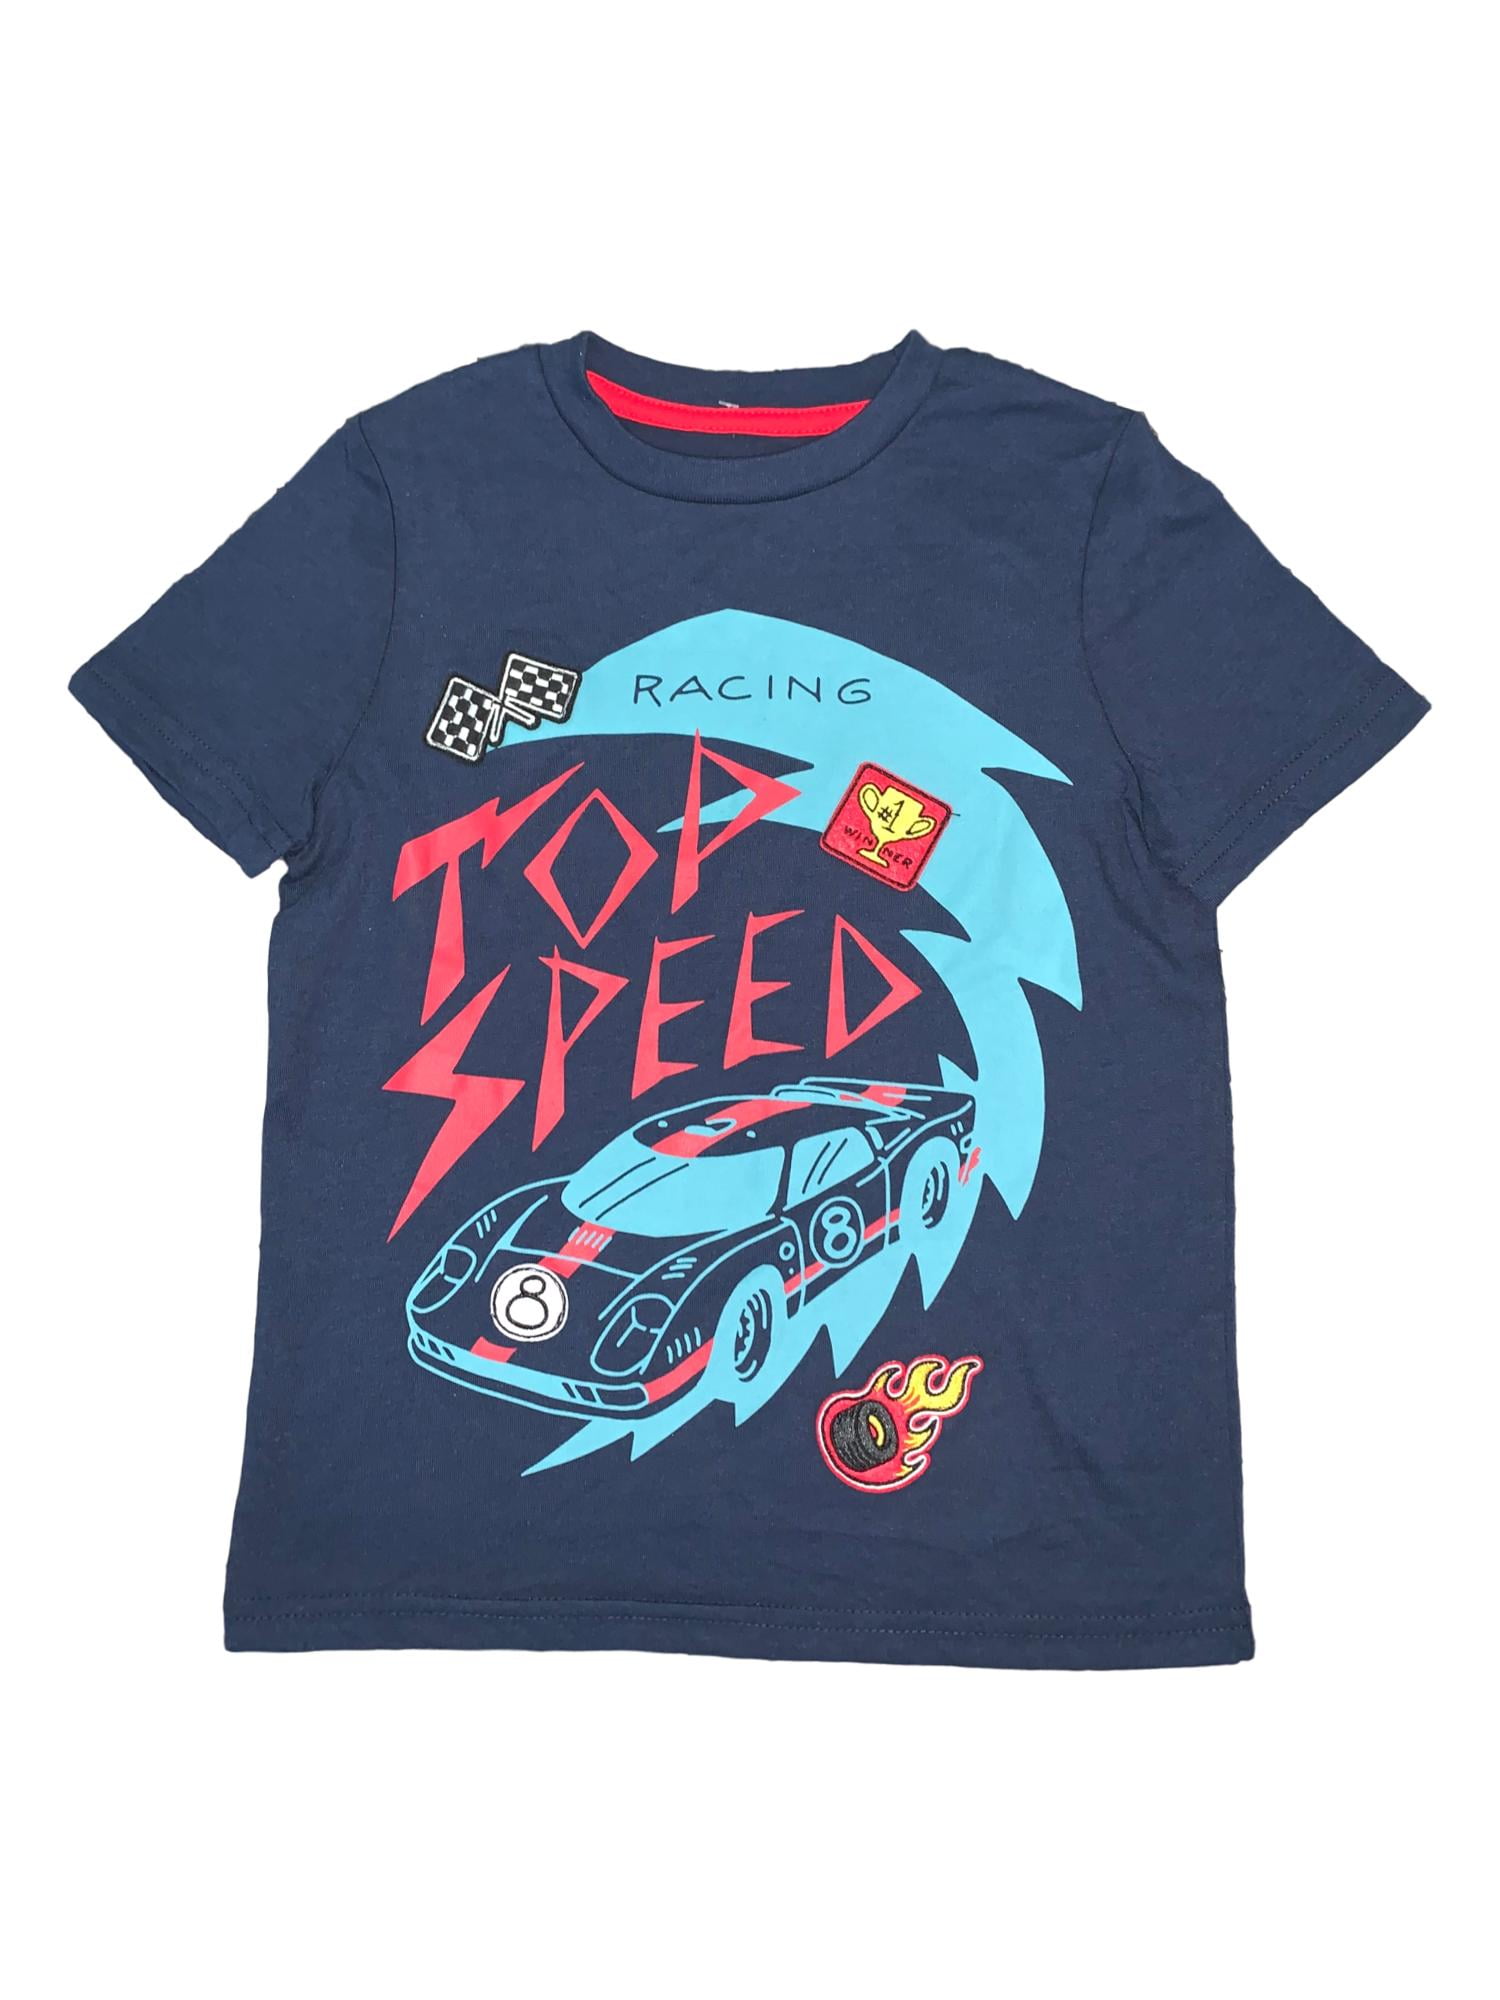 JEM Collective Boys Navy Blue Car Racing Top Speed T-Shirt Tee Shirt 5 ...